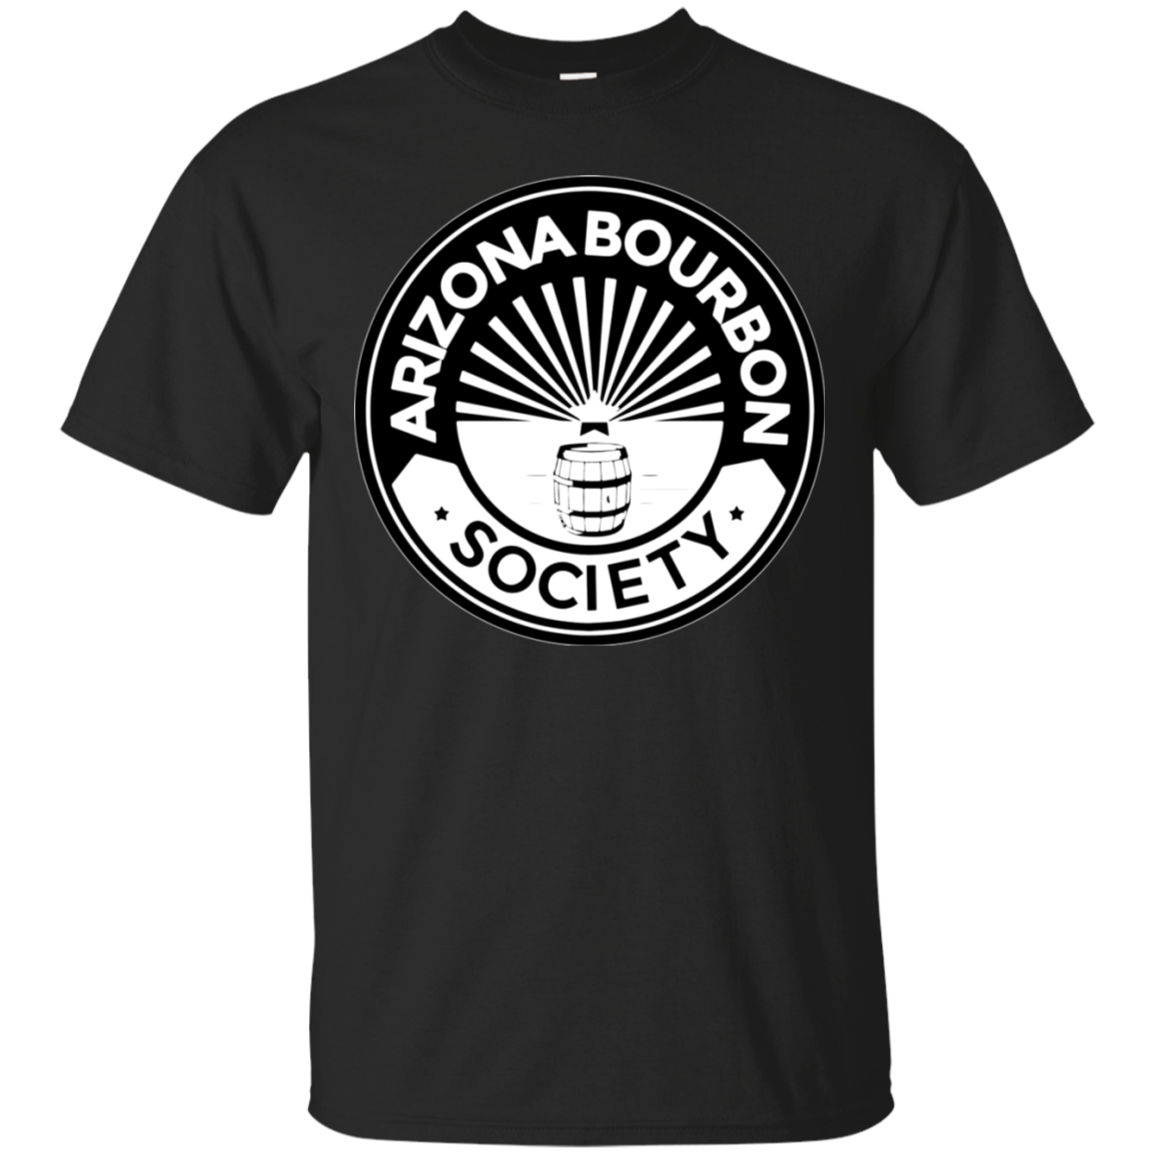 Arizona Bourbon Society Shirt